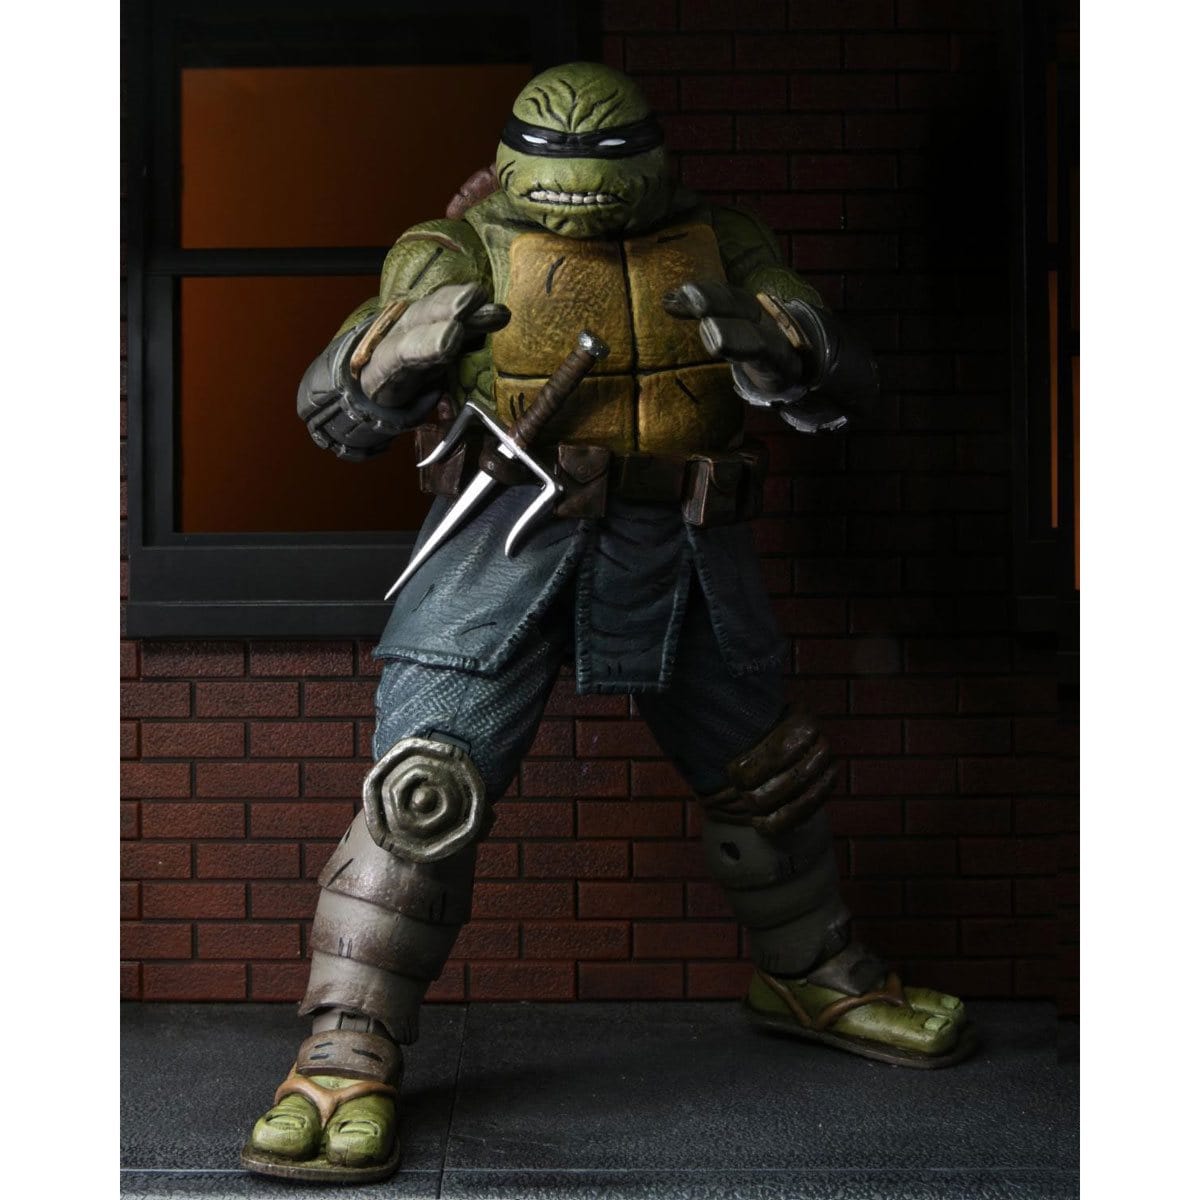 NECA Teenage Mutant Ninja Turtles Ultimate The Last Ronin Unarmored Action Figure